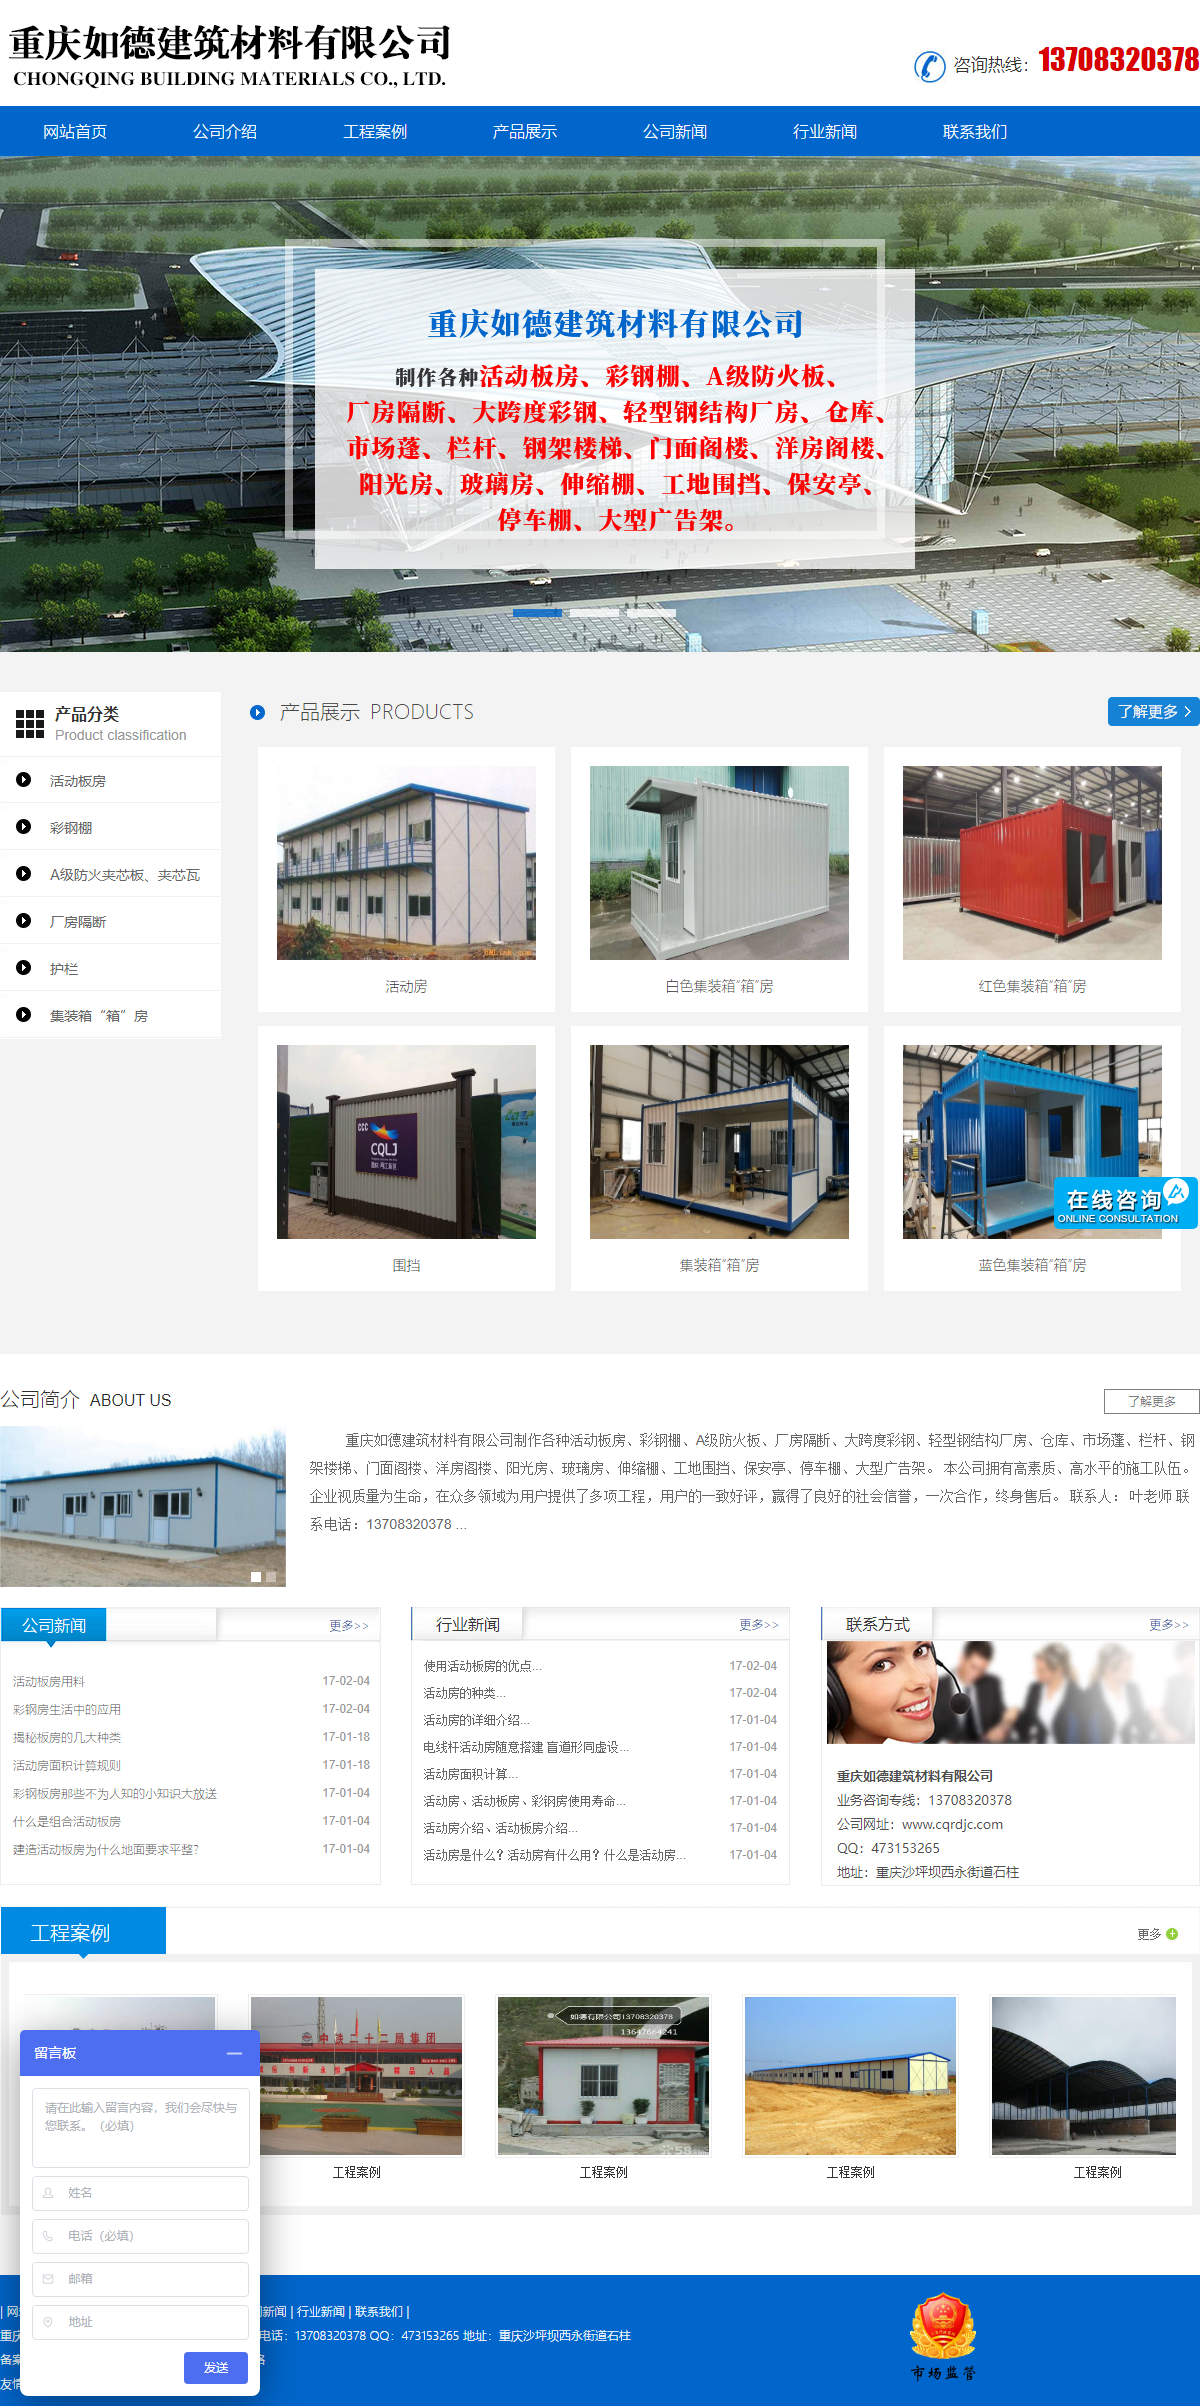 重庆如德建筑材料有限公司网站案例